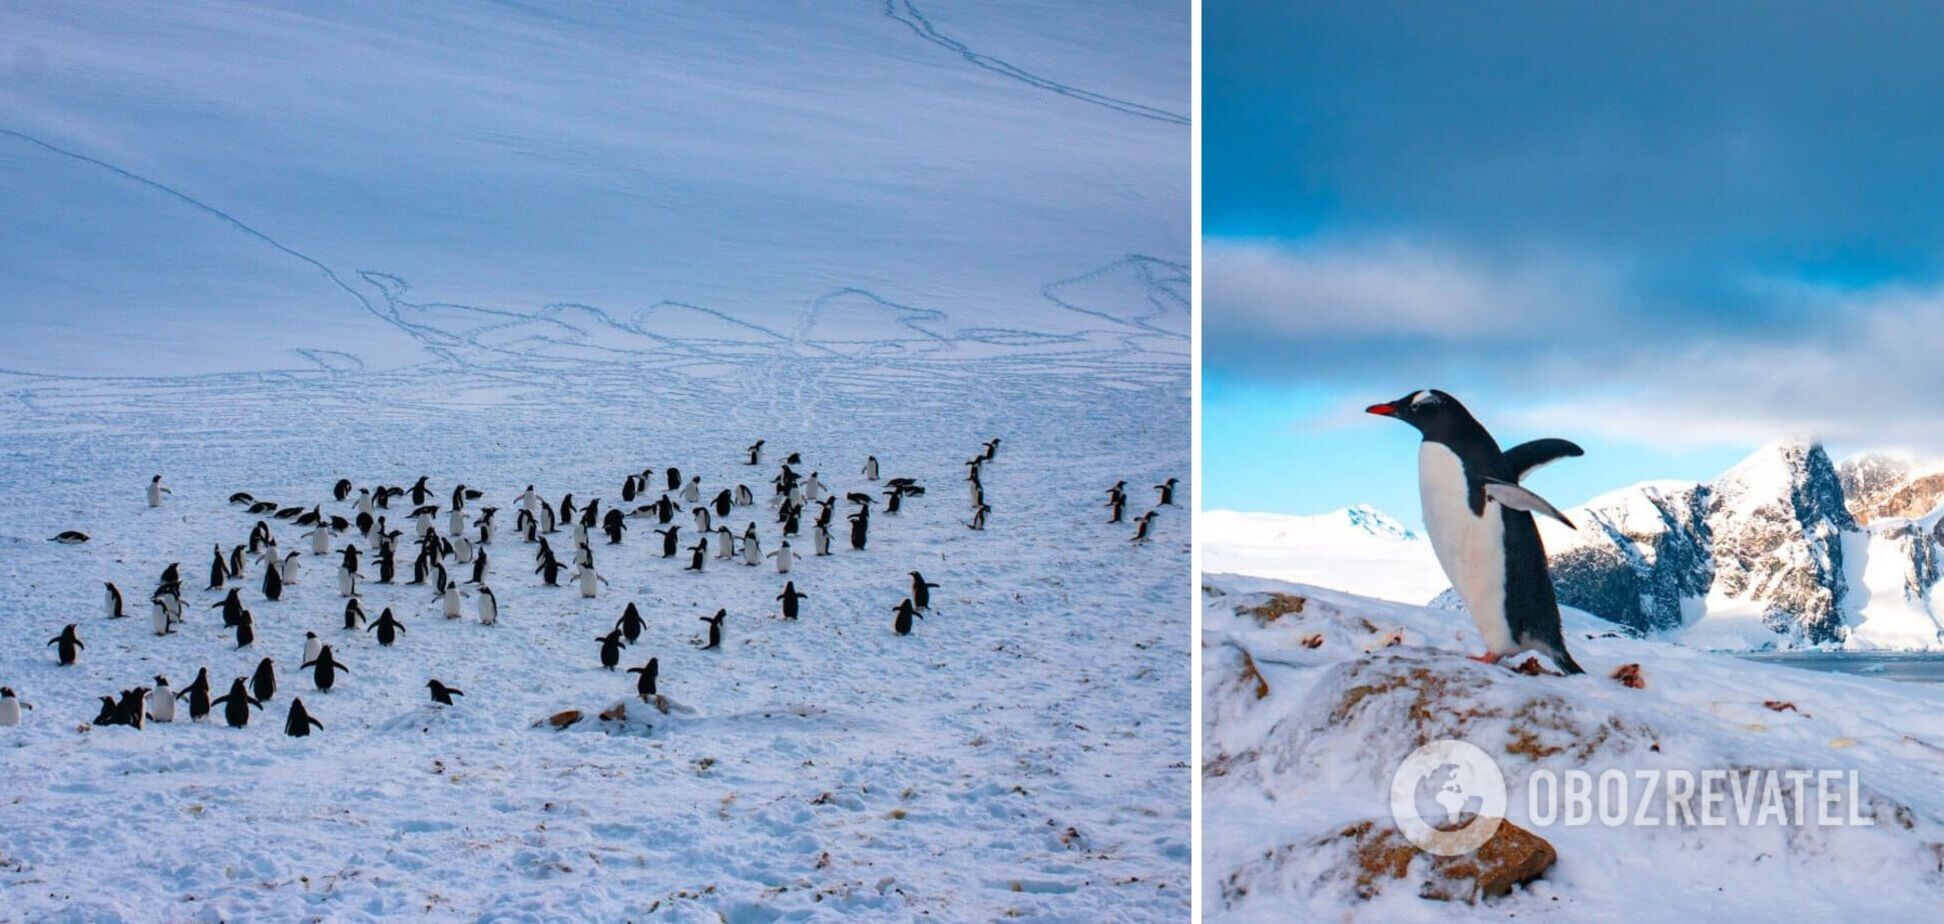  Станцію 'Академік Вернадський' заполонили пінгвіни для гніздування. Фото